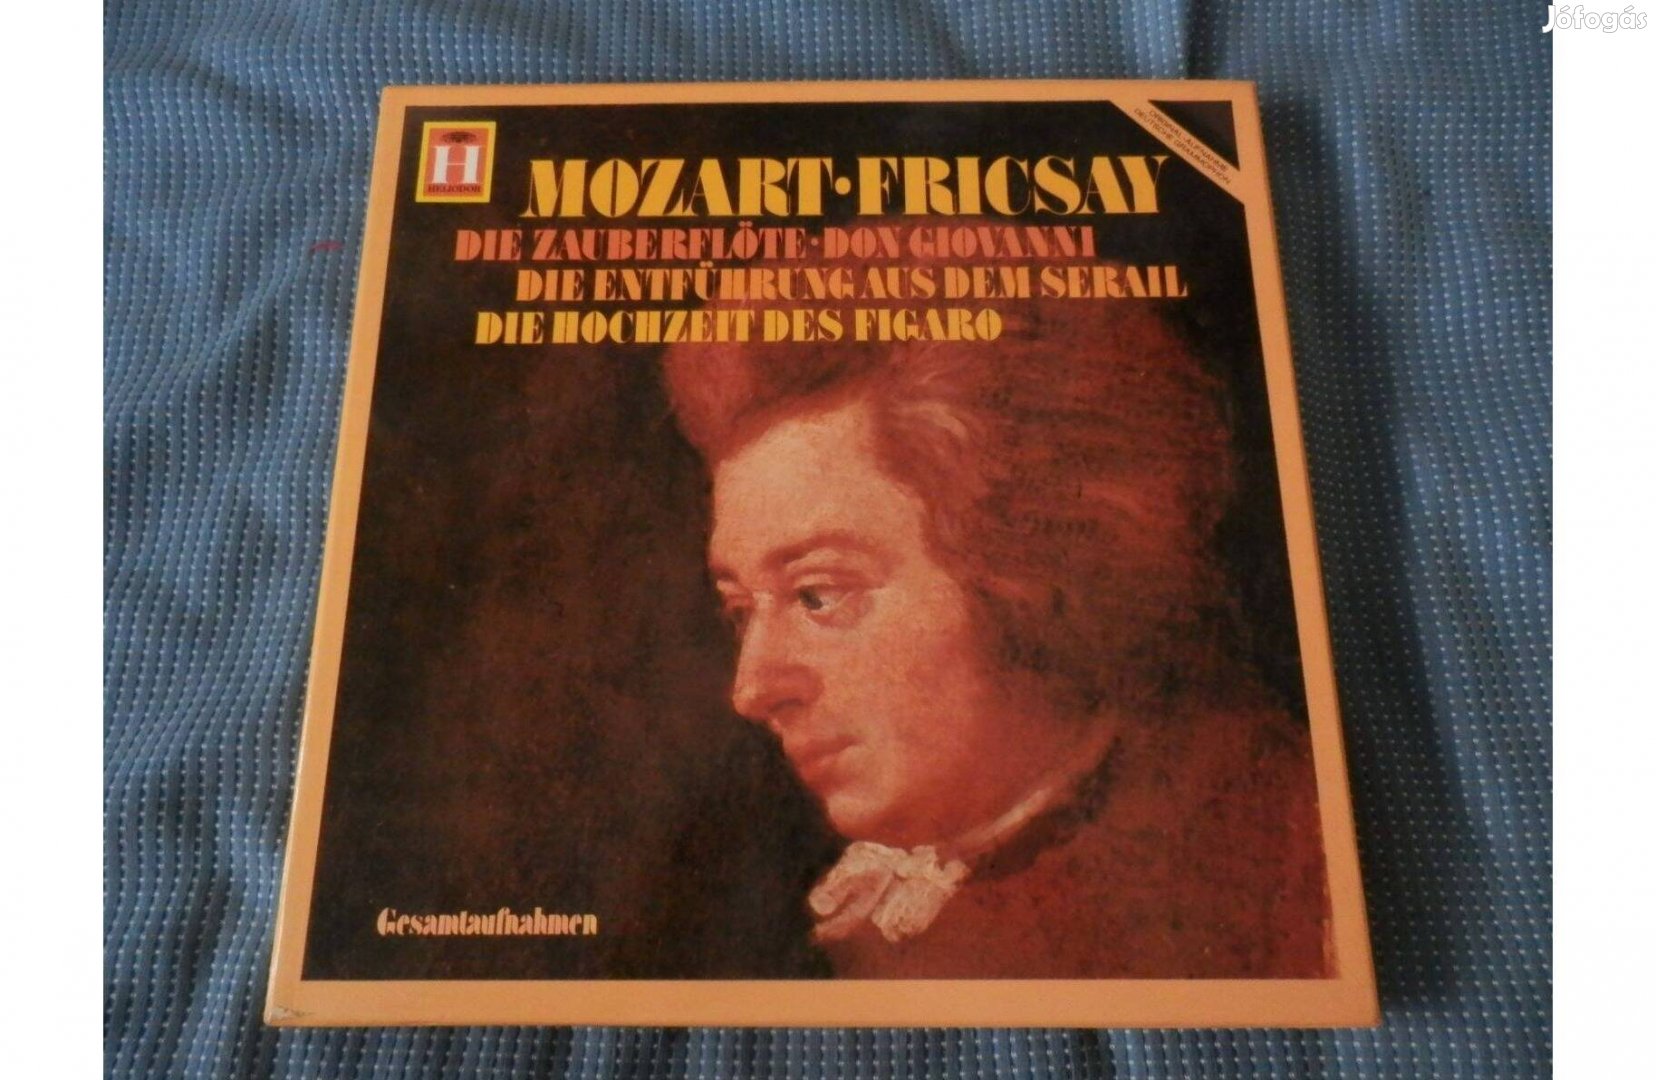 Fricsay Ferenc - W.A. Mozart 4 operája Heliodor összkiadás 11 LP